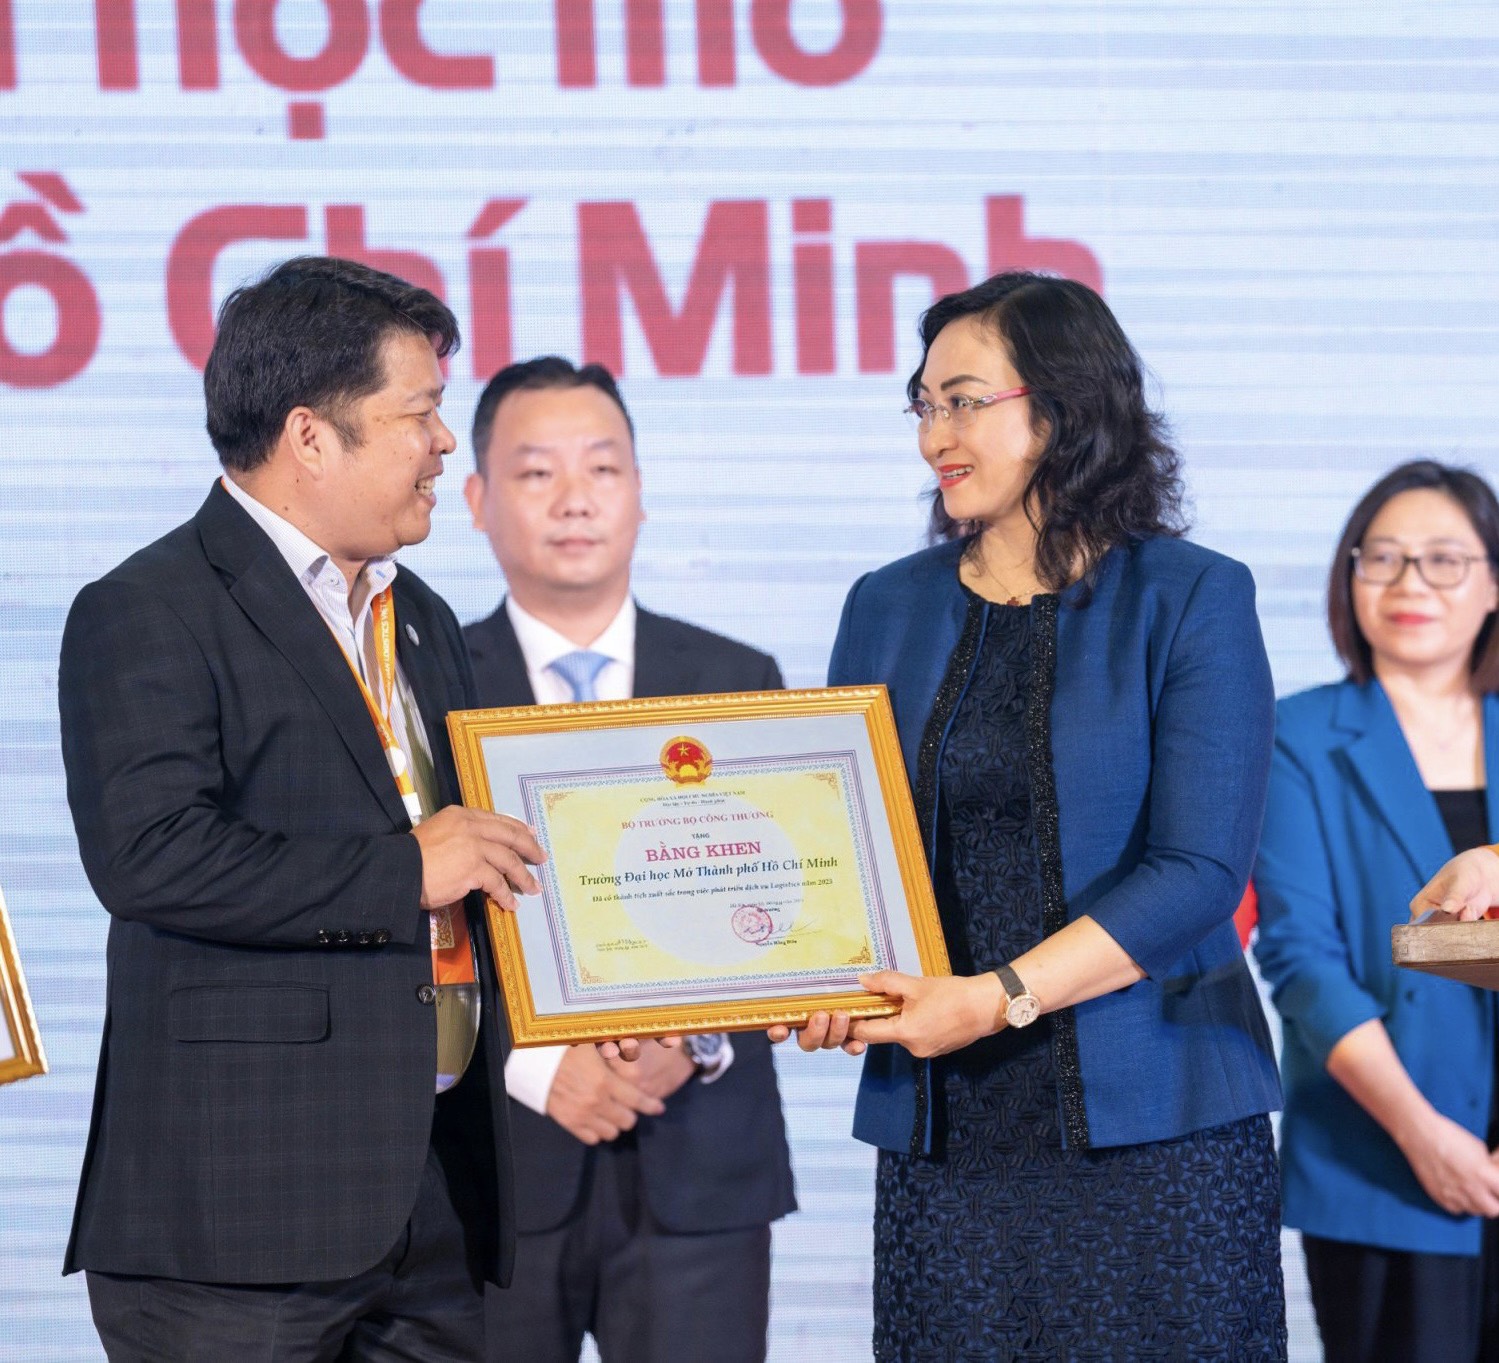 game bai doi thuong
 Thành phố Hồ Chí Minh vinh dự nhận bằng khen của Bộ Công thương